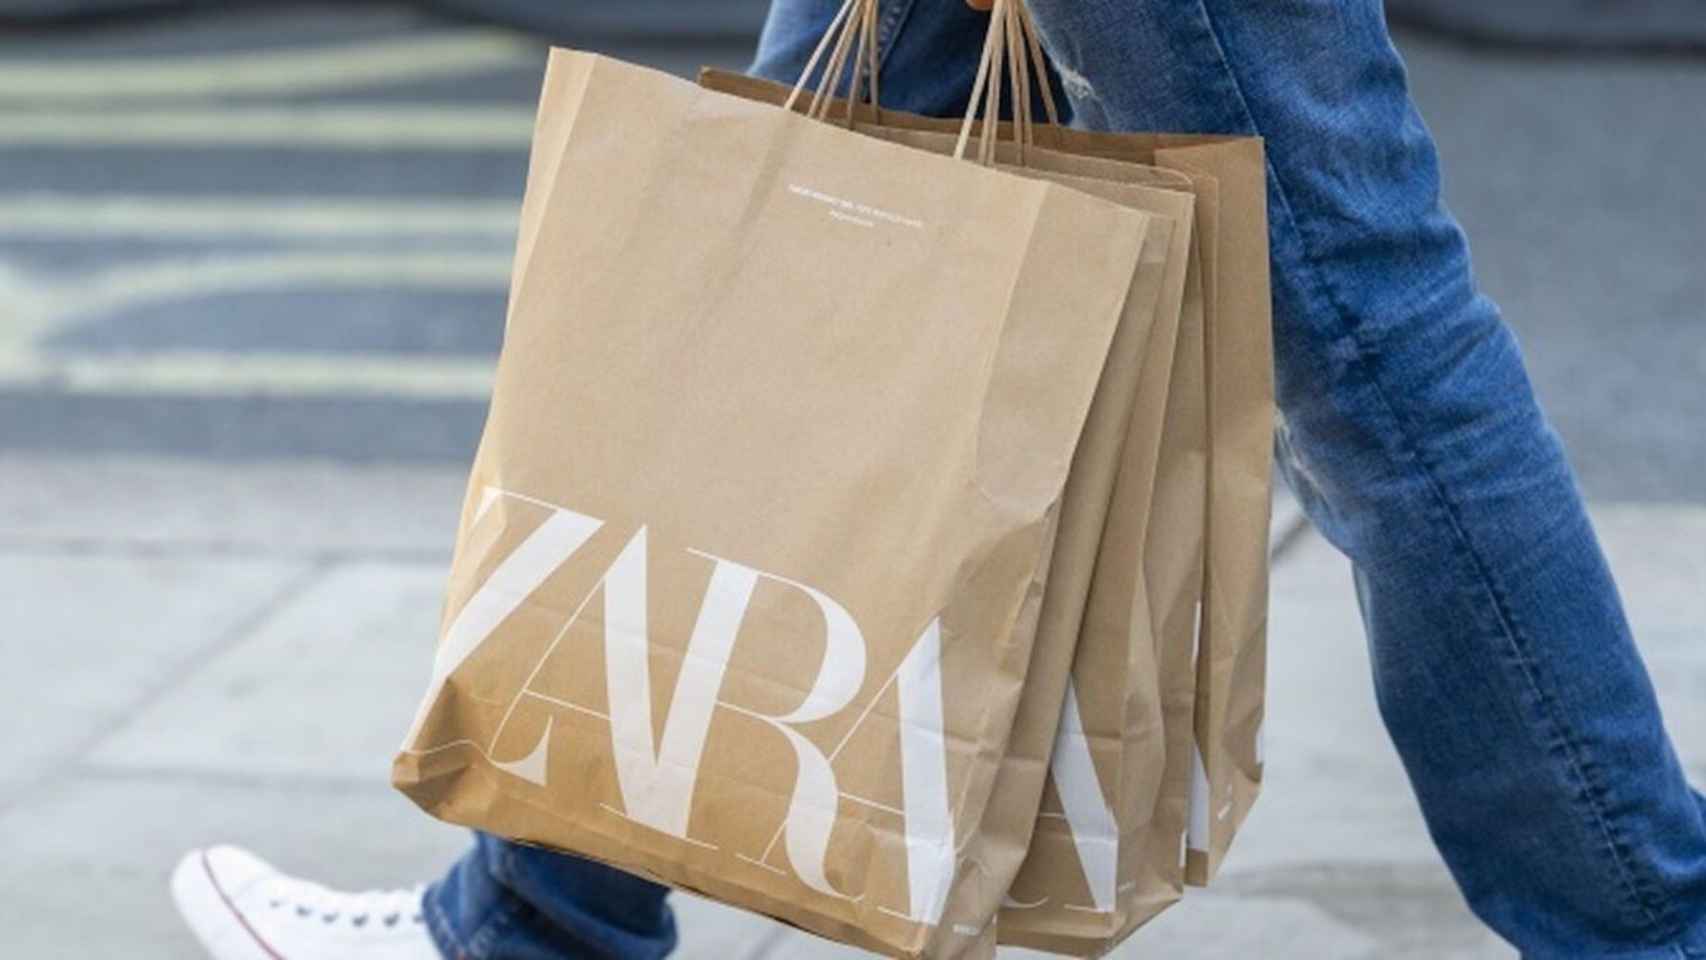 Una persona pasea con varias bolsas de papel de Zara, una de las marcas de Inditex